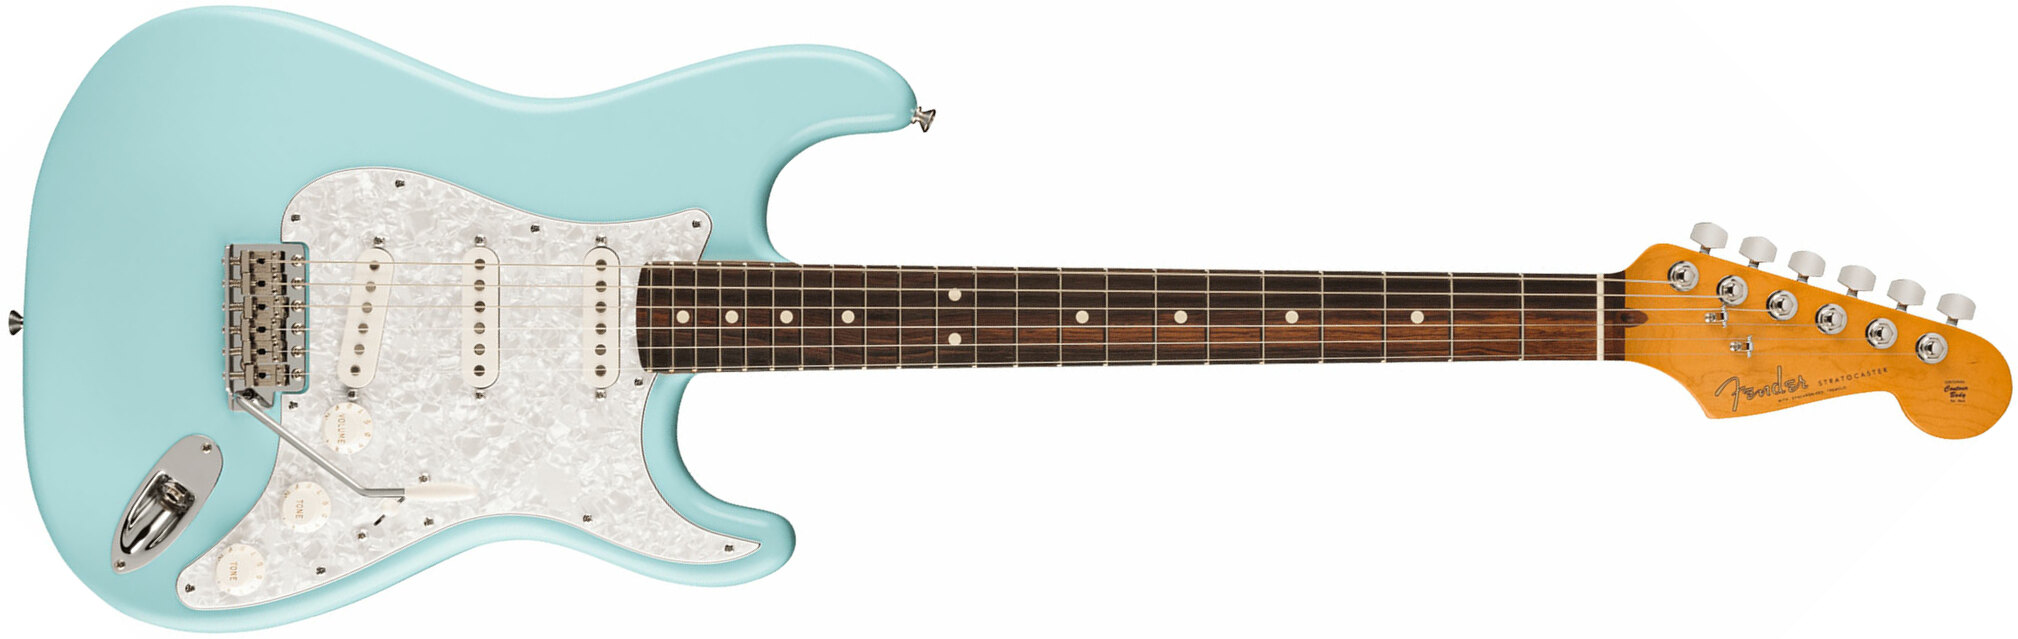 Fender Cory Wong Strat Ltd Signature Usa Stss Trem Rw - Daphne Blue - Guitare Électrique Forme Str - Main picture